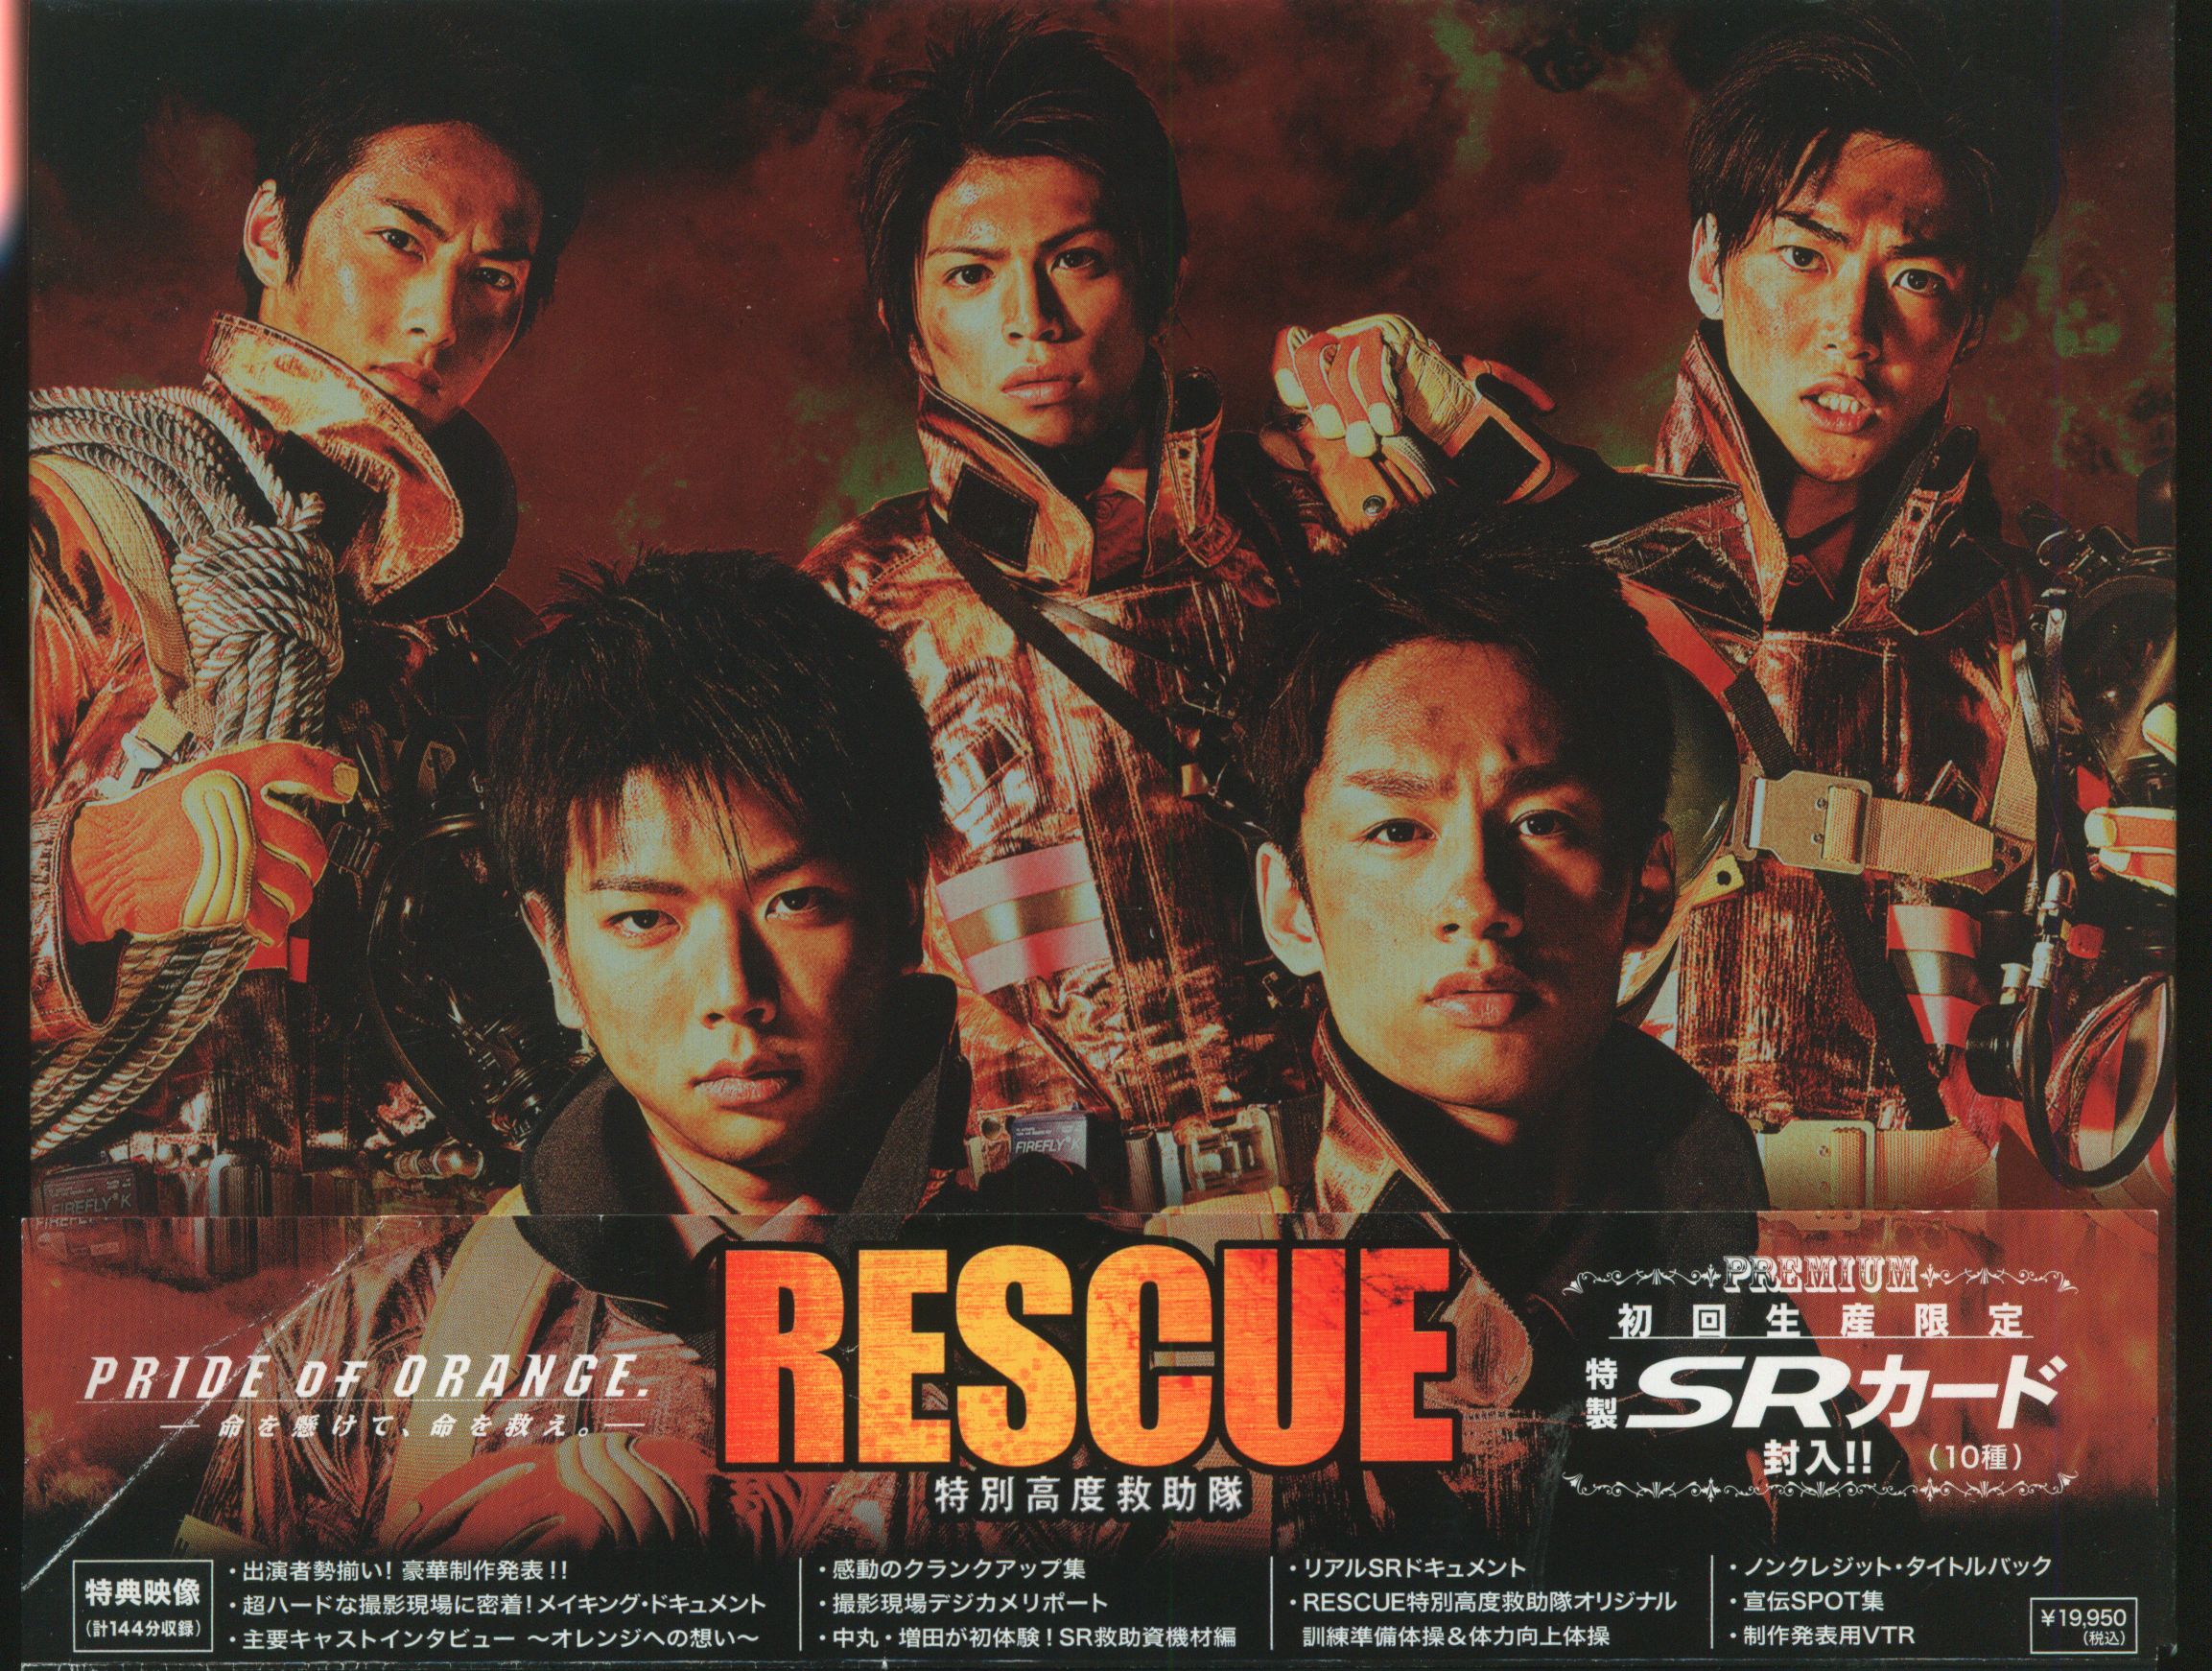 RESCUE特別高度救助隊 初回限定盤DVDエンタメ/ホビー